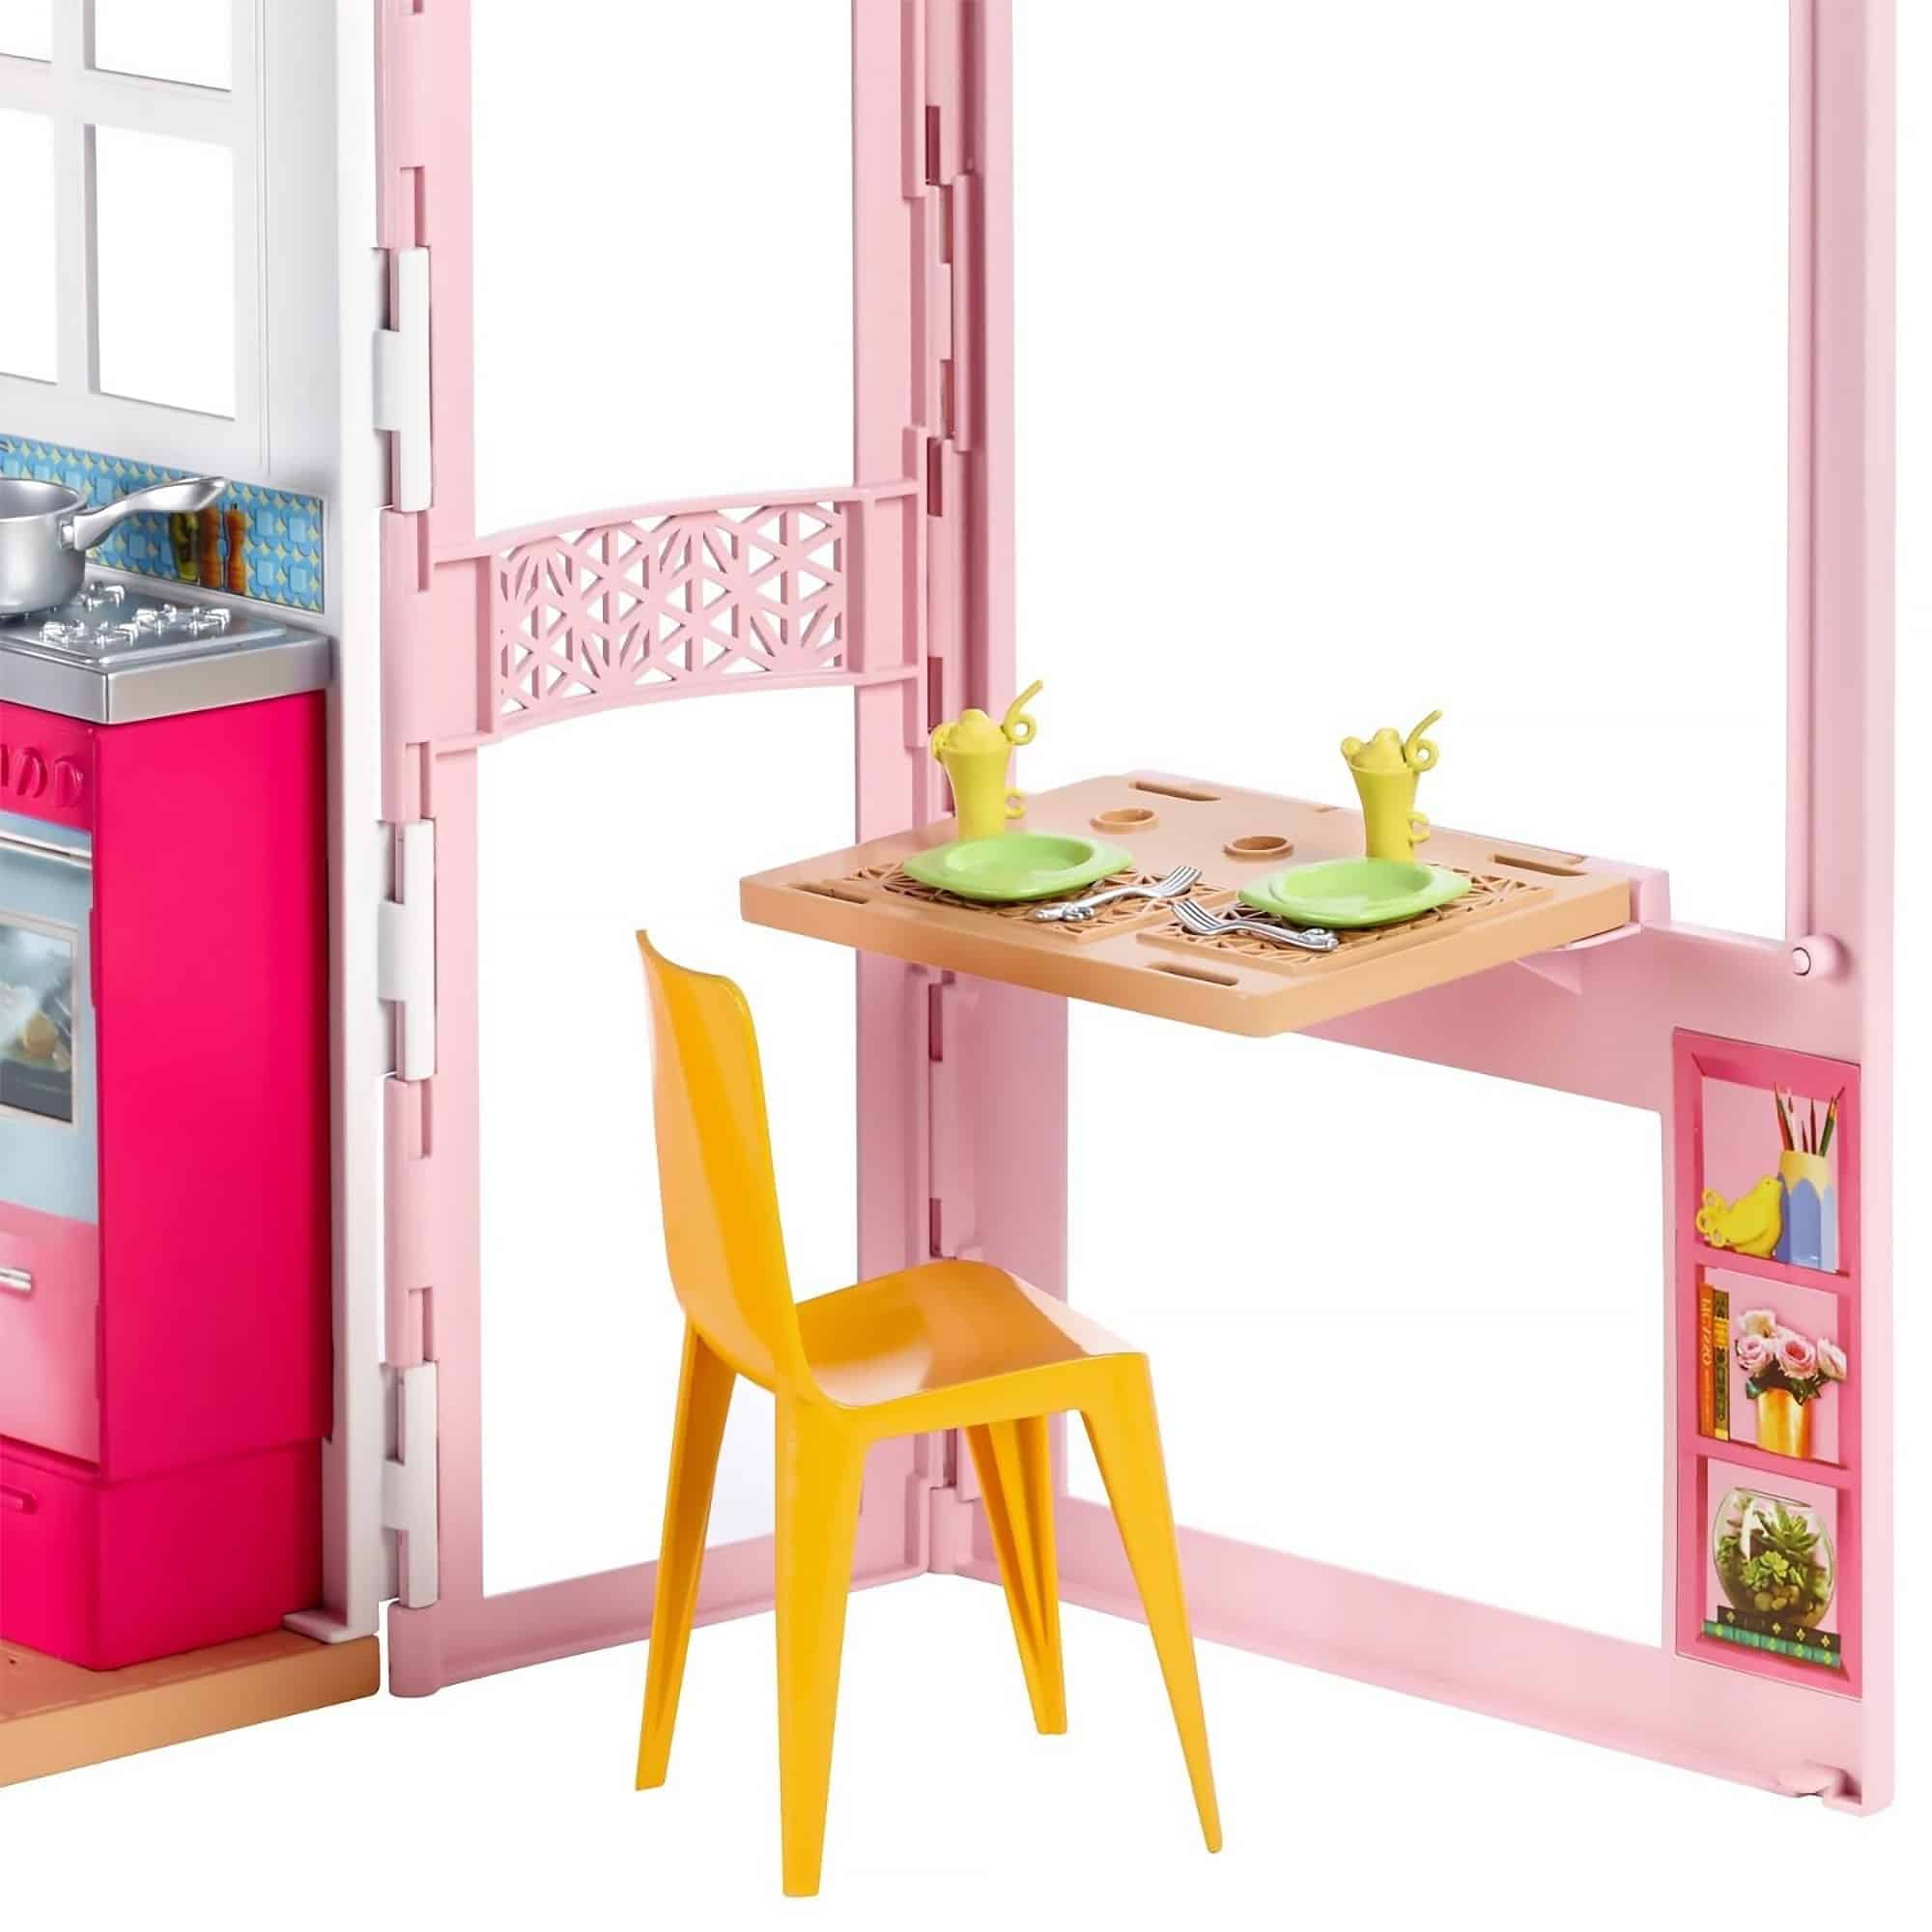 Barbie® - 2-Story House